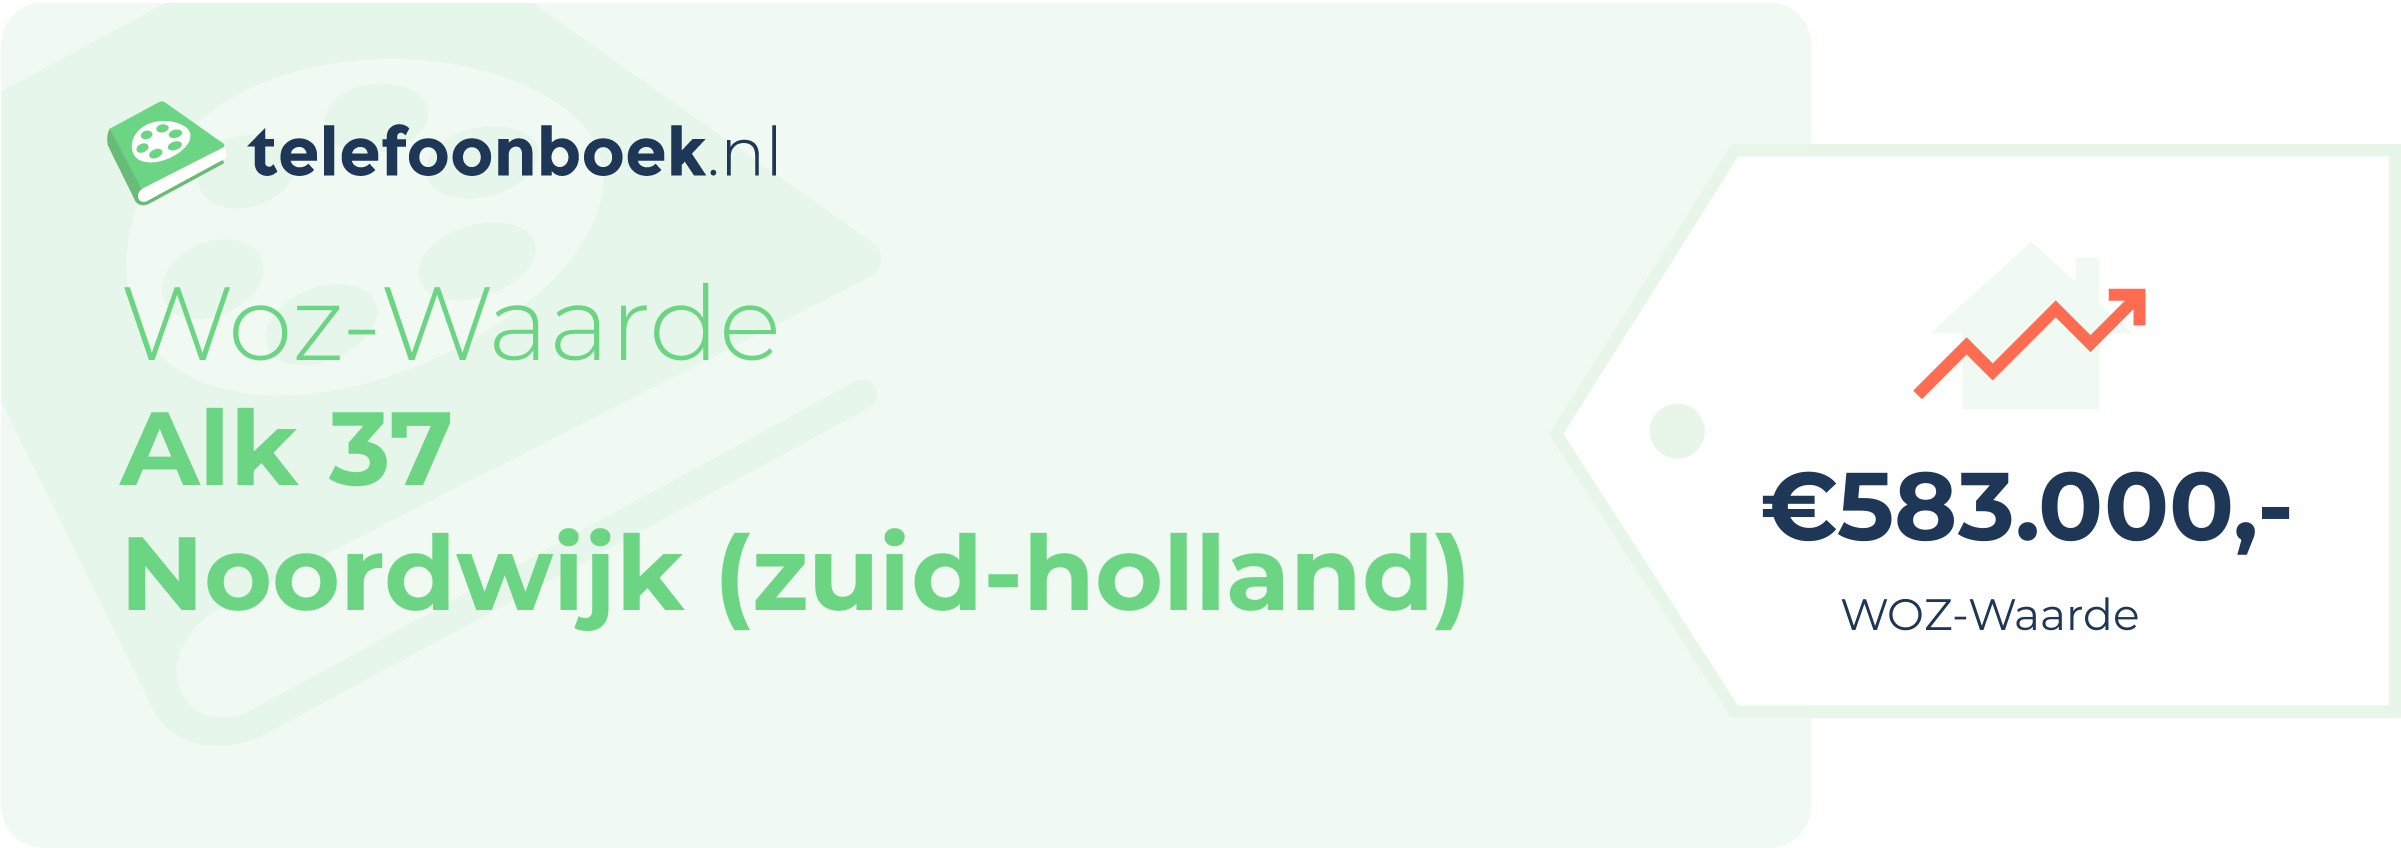 WOZ-waarde Alk 37 Noordwijk (Zuid-Holland)